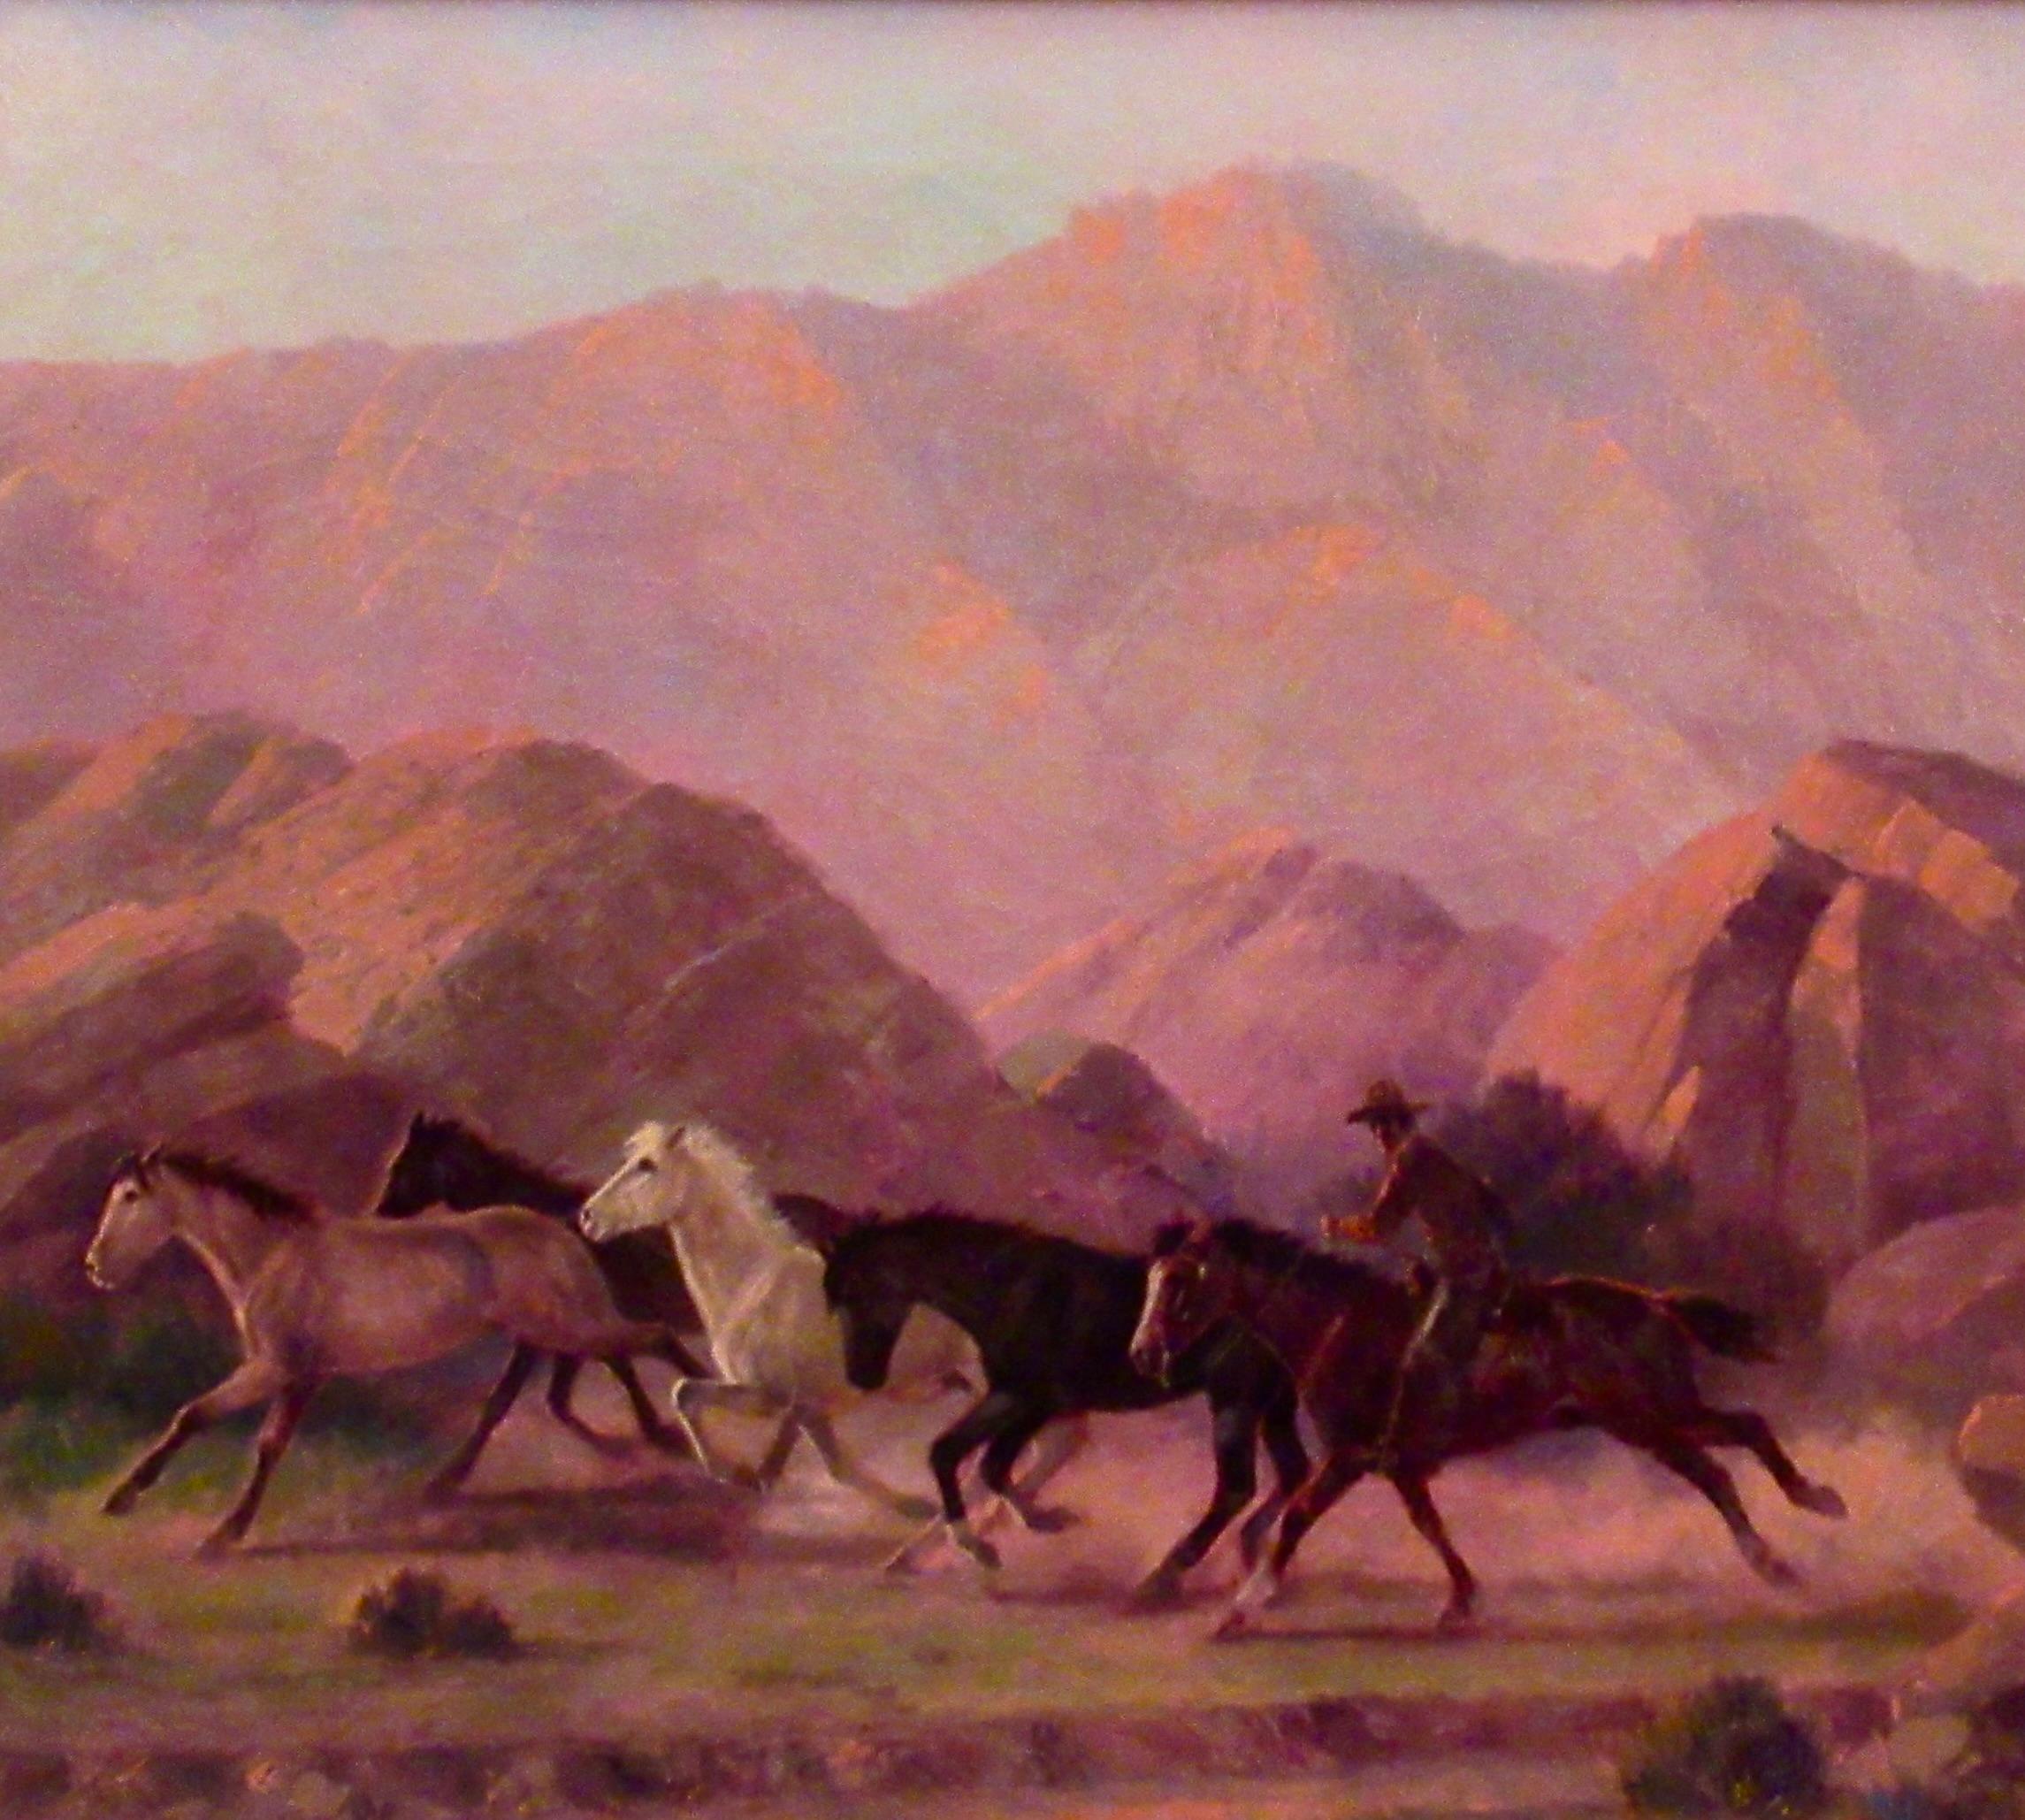 Scène occidentale - Réalisme américain Painting par Charles Damrow